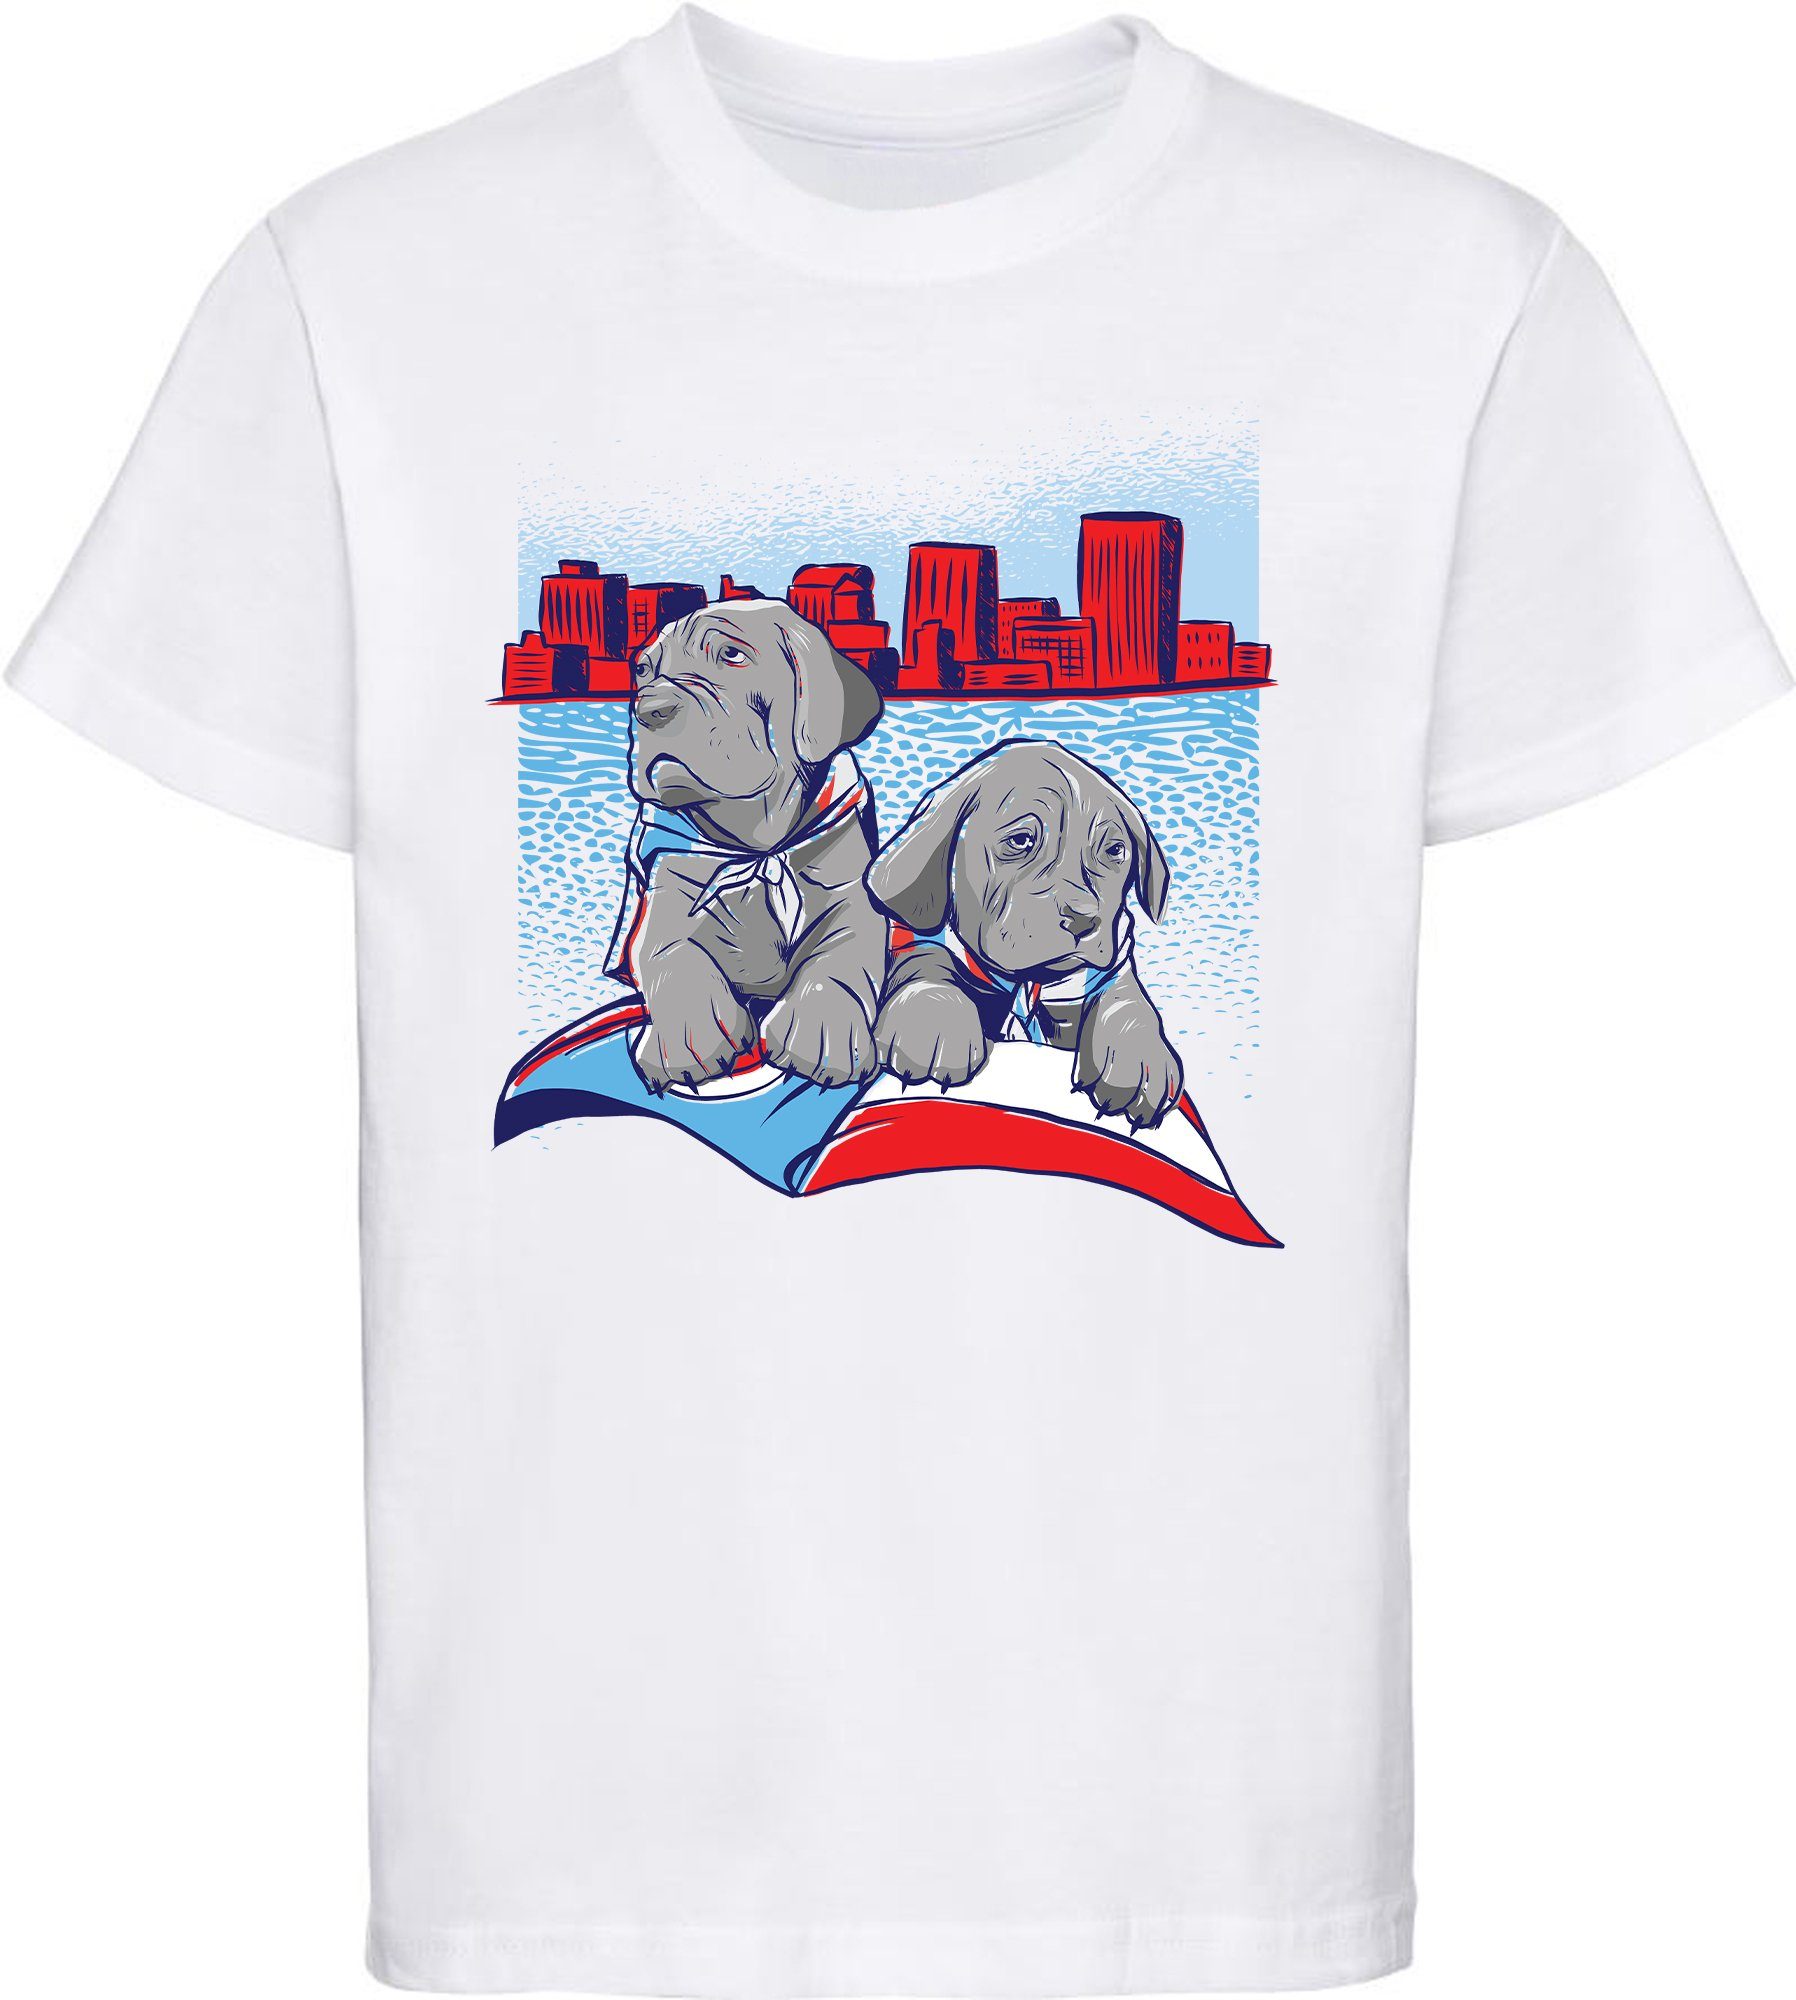 MyDesign24 Print-Shirt Kinder Hunde T-Shirt bedruckt - 2 süße Hundewelpen Baumwollshirt mit Aufdruck, i231 weiss | T-Shirts